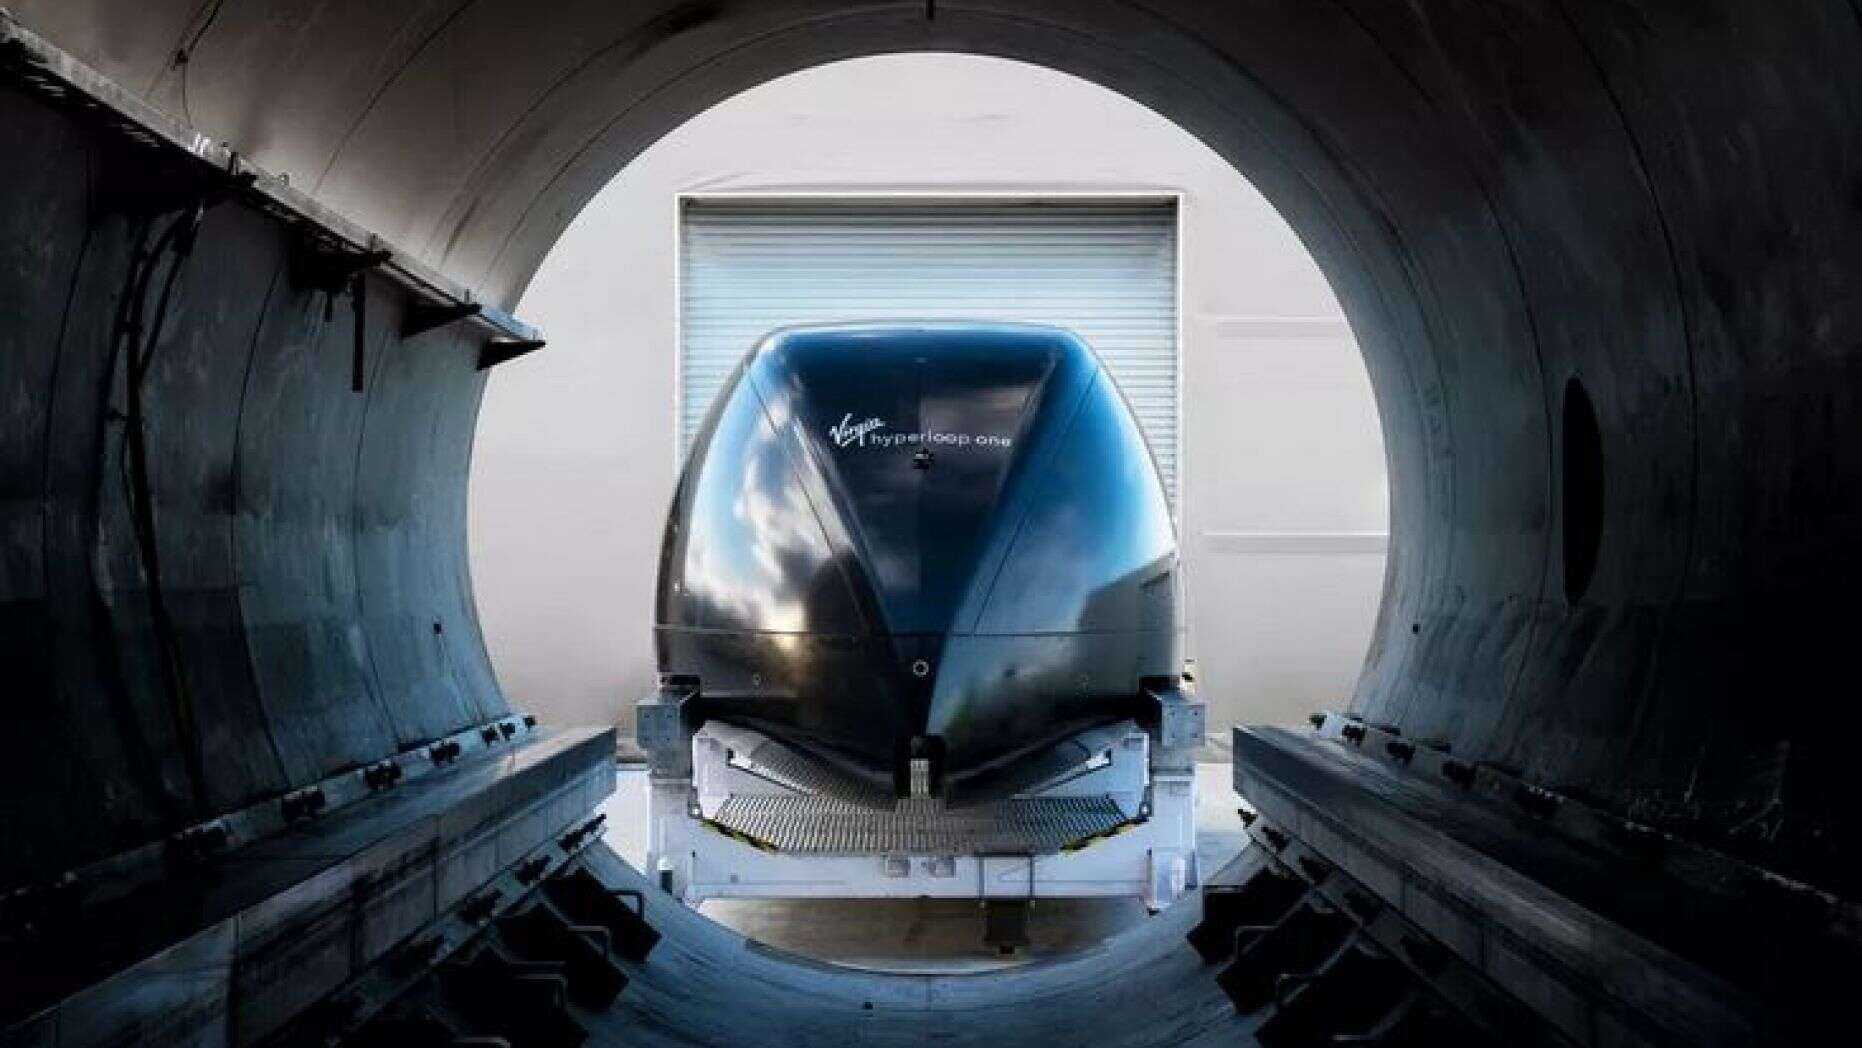 Transporte hipersónico "hyperloop" avanza hacia su realización